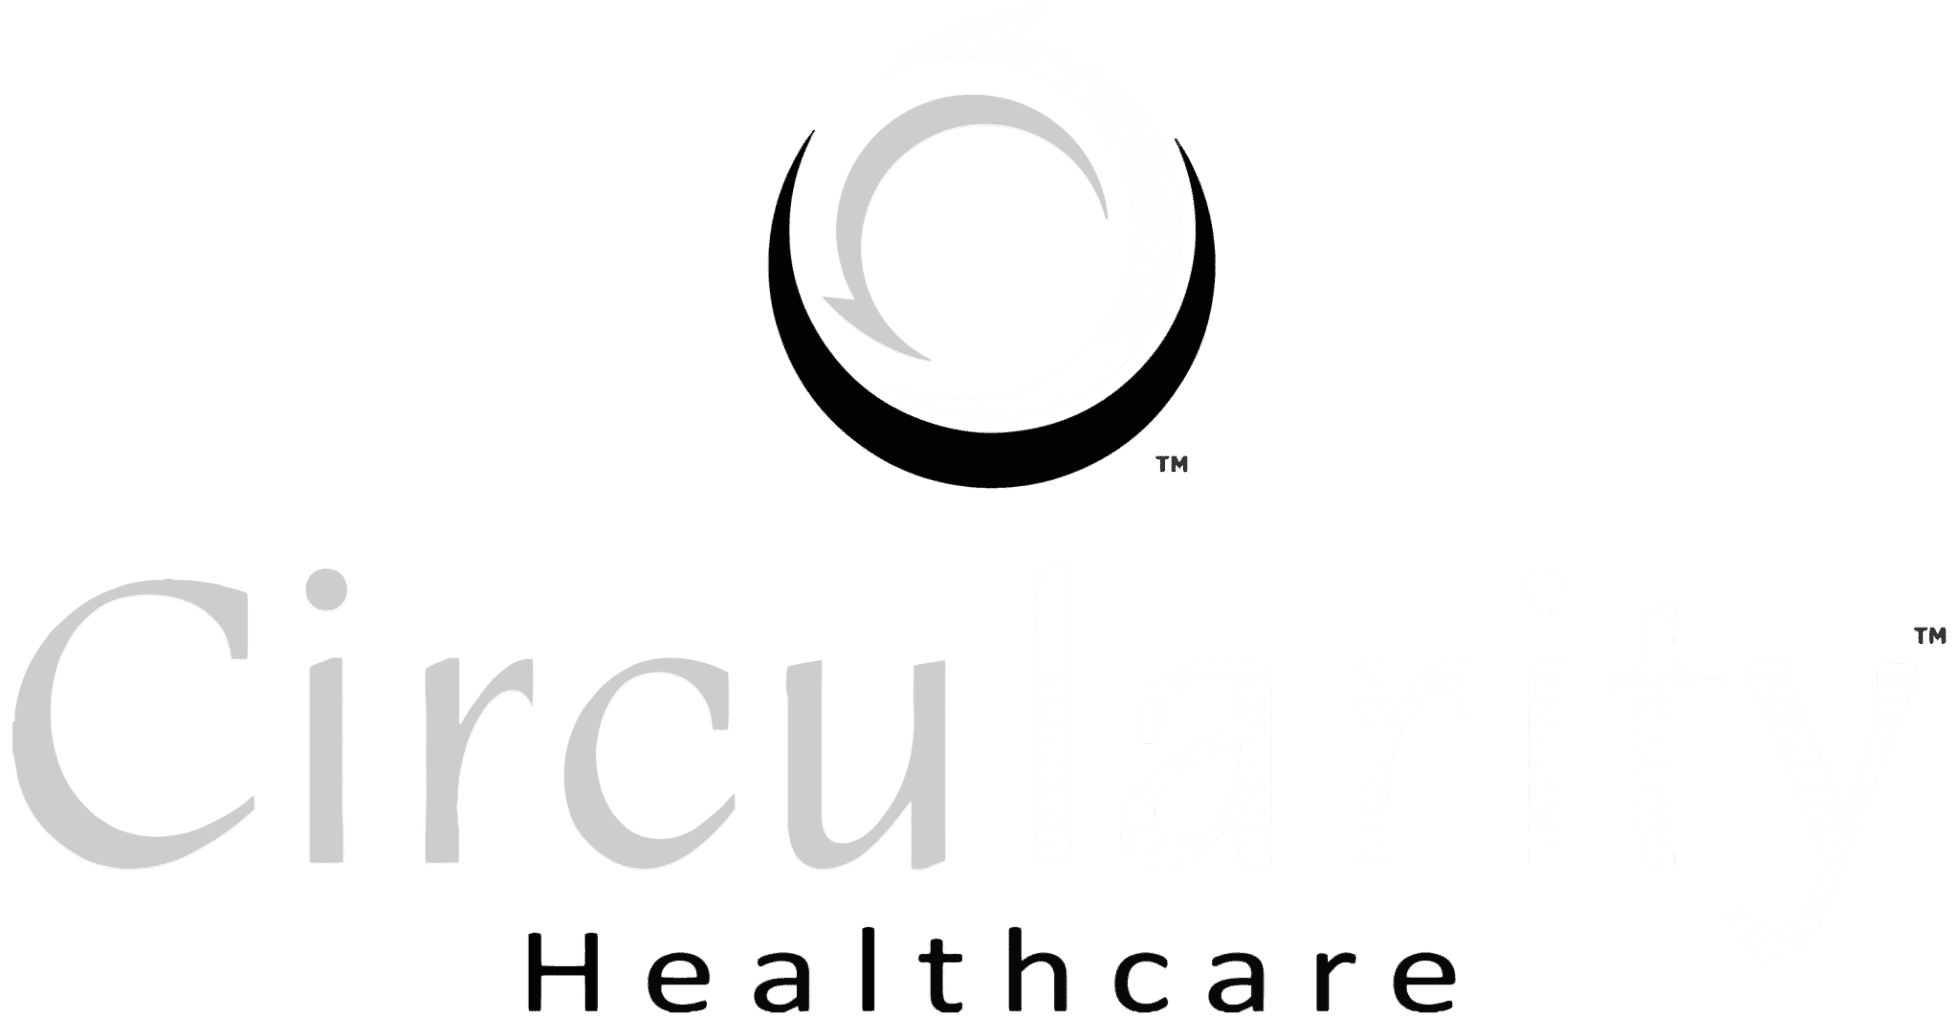 Circularity Healthcare logo